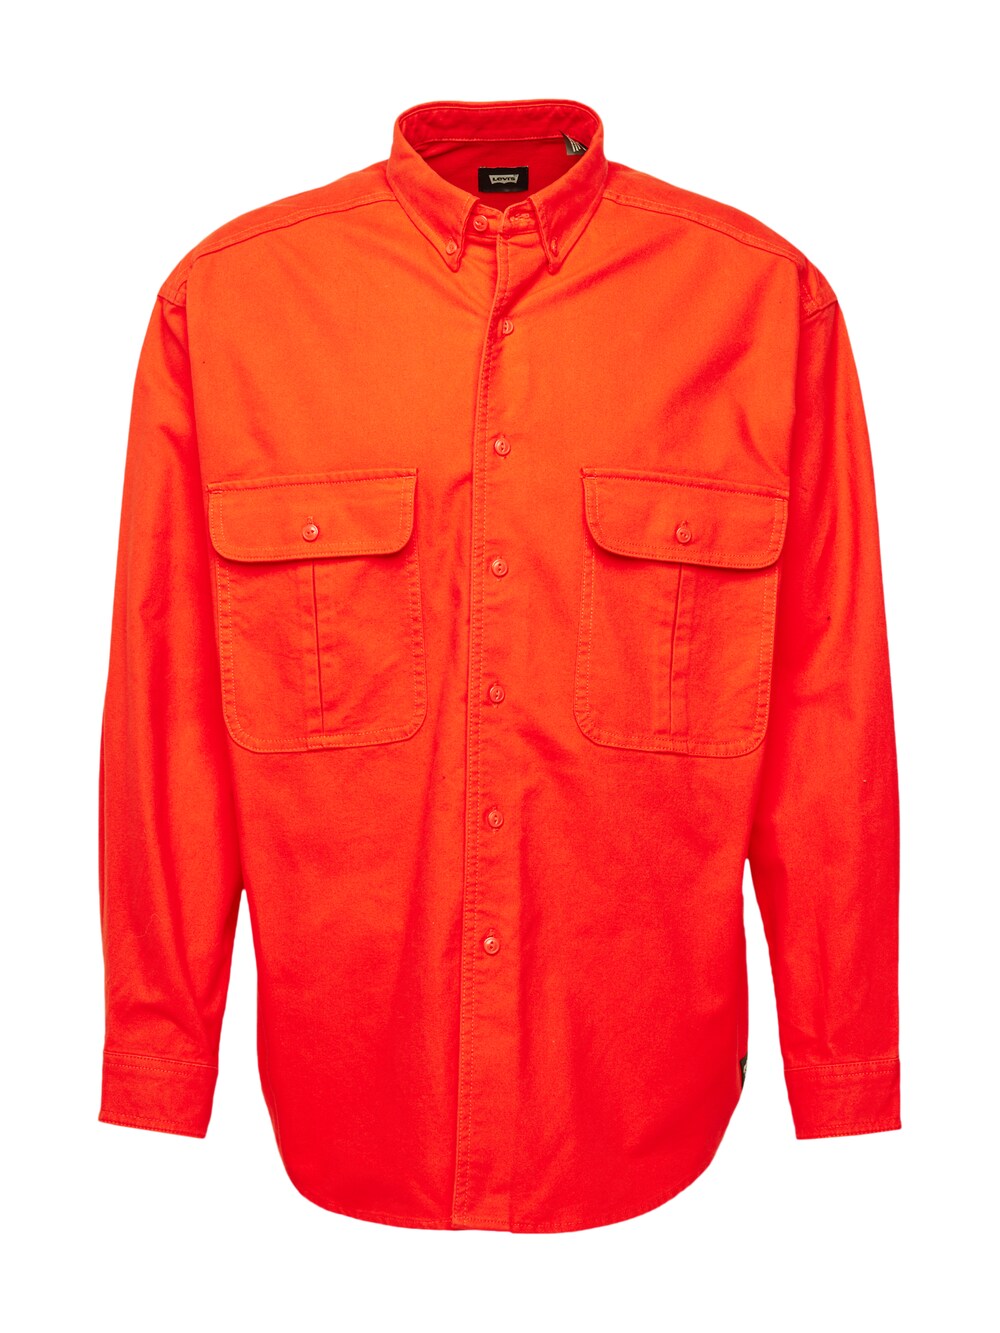 Межсезонная куртка Levis Skateboarding, оранжево-красный межсезонная куртка superdry оранжево красный